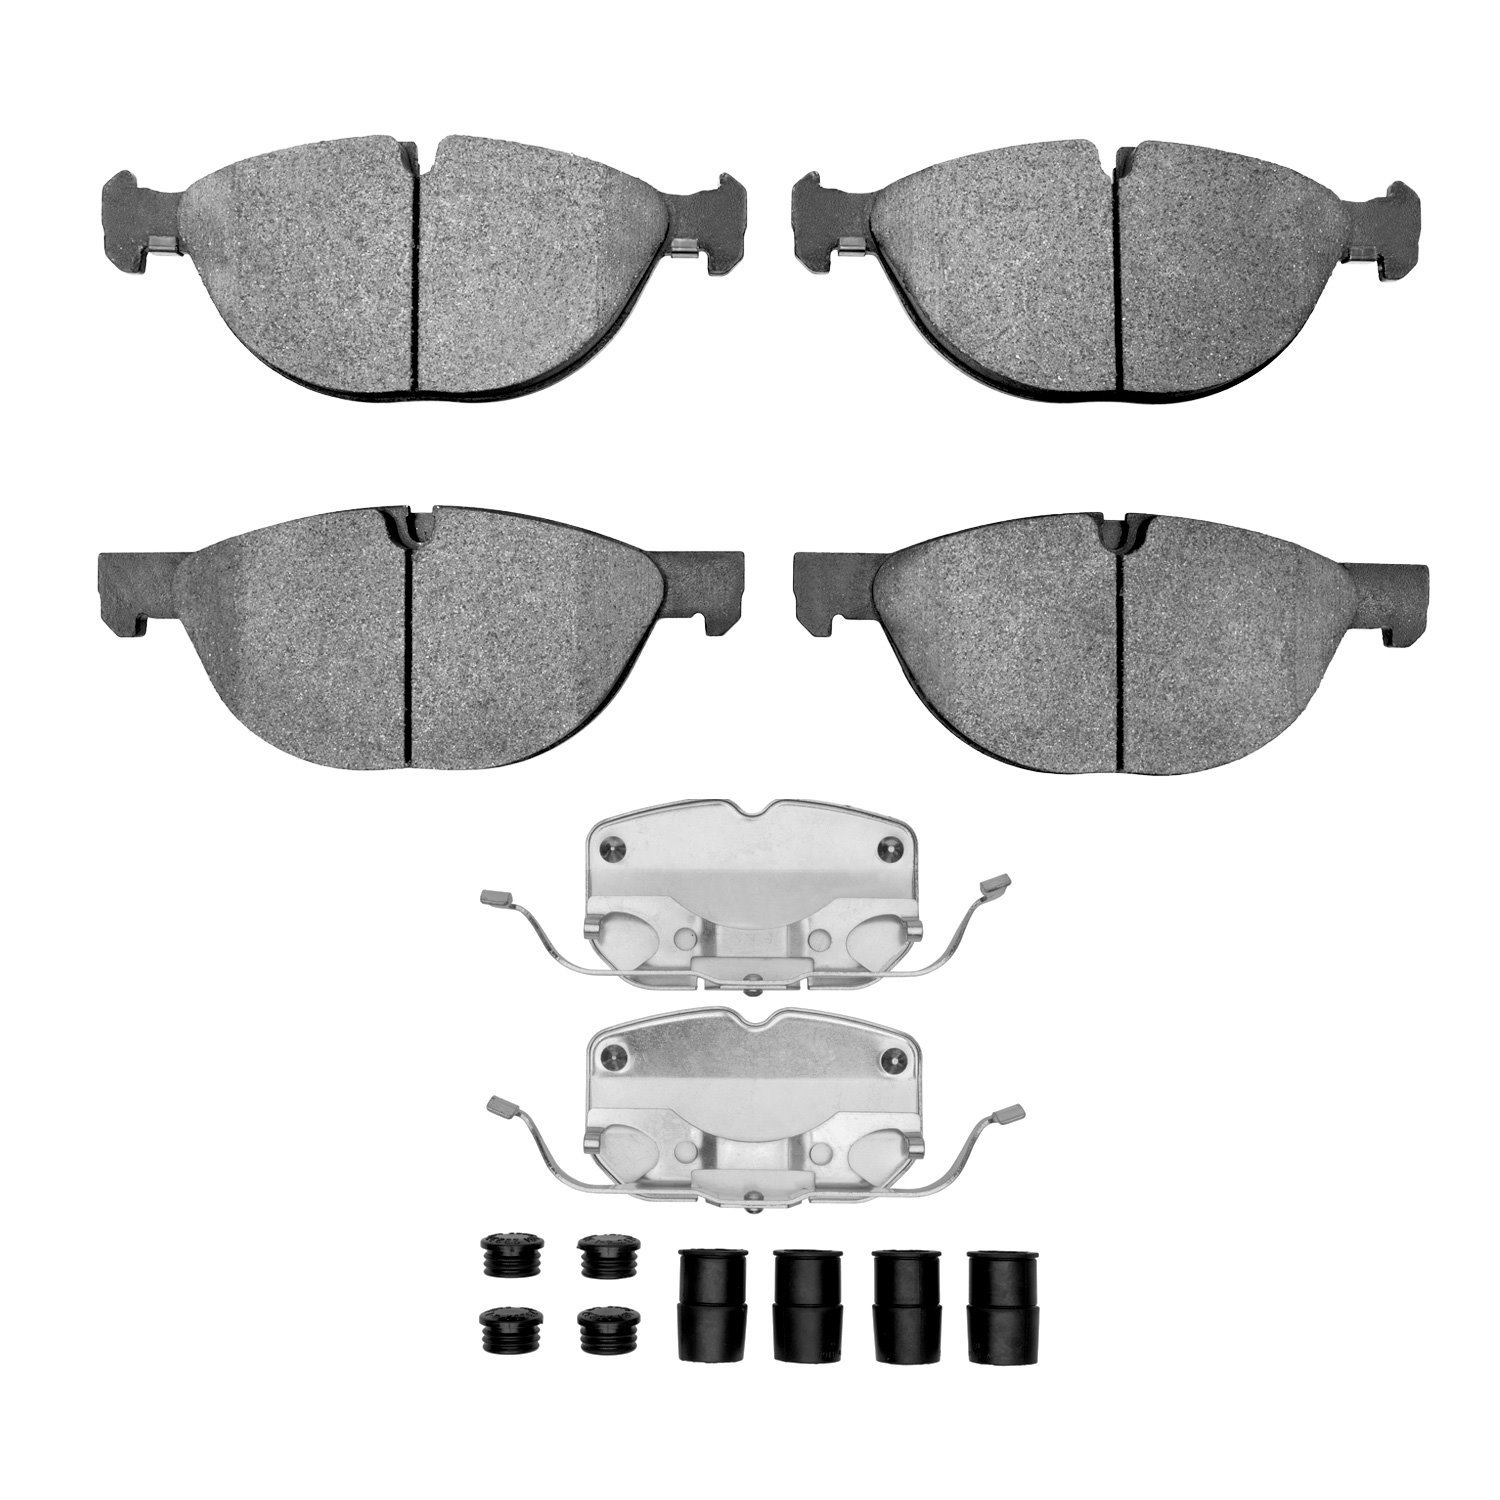 1311-1381-01 3000-Series Semi-Metallic Brake Pads & Hardware Kit, 2008-2019 BMW, Position: Front